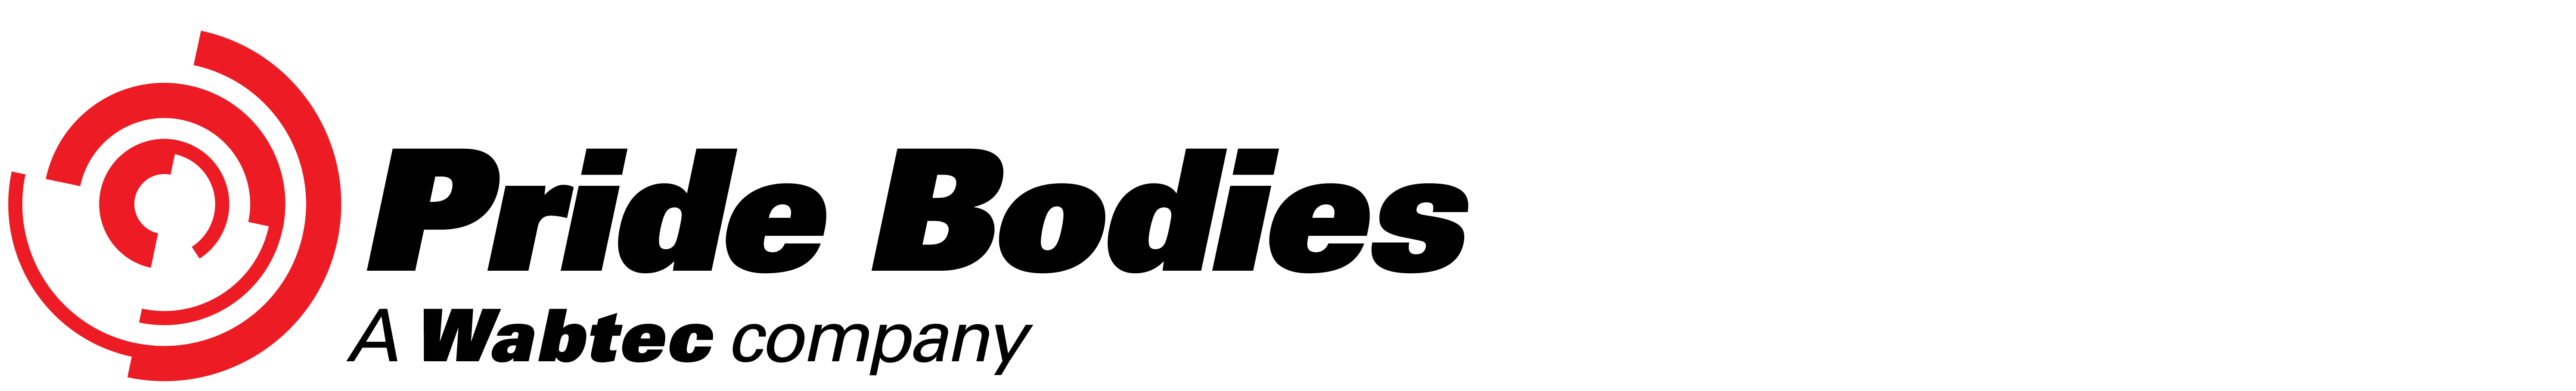 Wabtec Logo - Pride Bodies | Wabtec Corporation